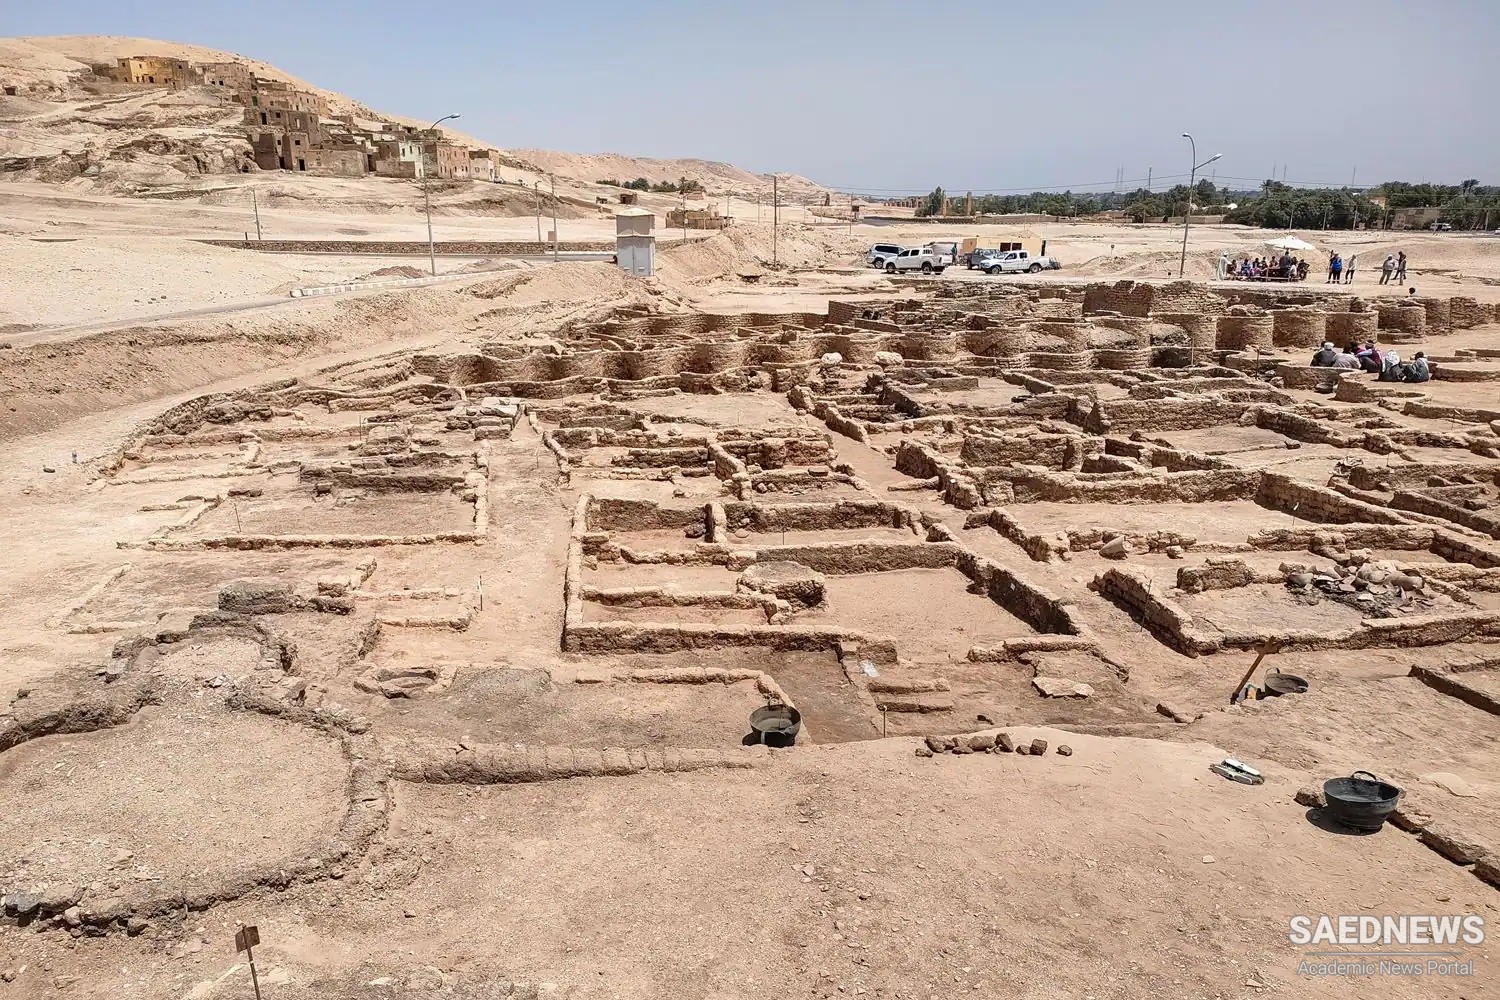 मिस्र के खोये हुए शहर का अनावरण, किंग टुट की कब्र के बाद से 'सबसे महत्वपूर्ण खोज'